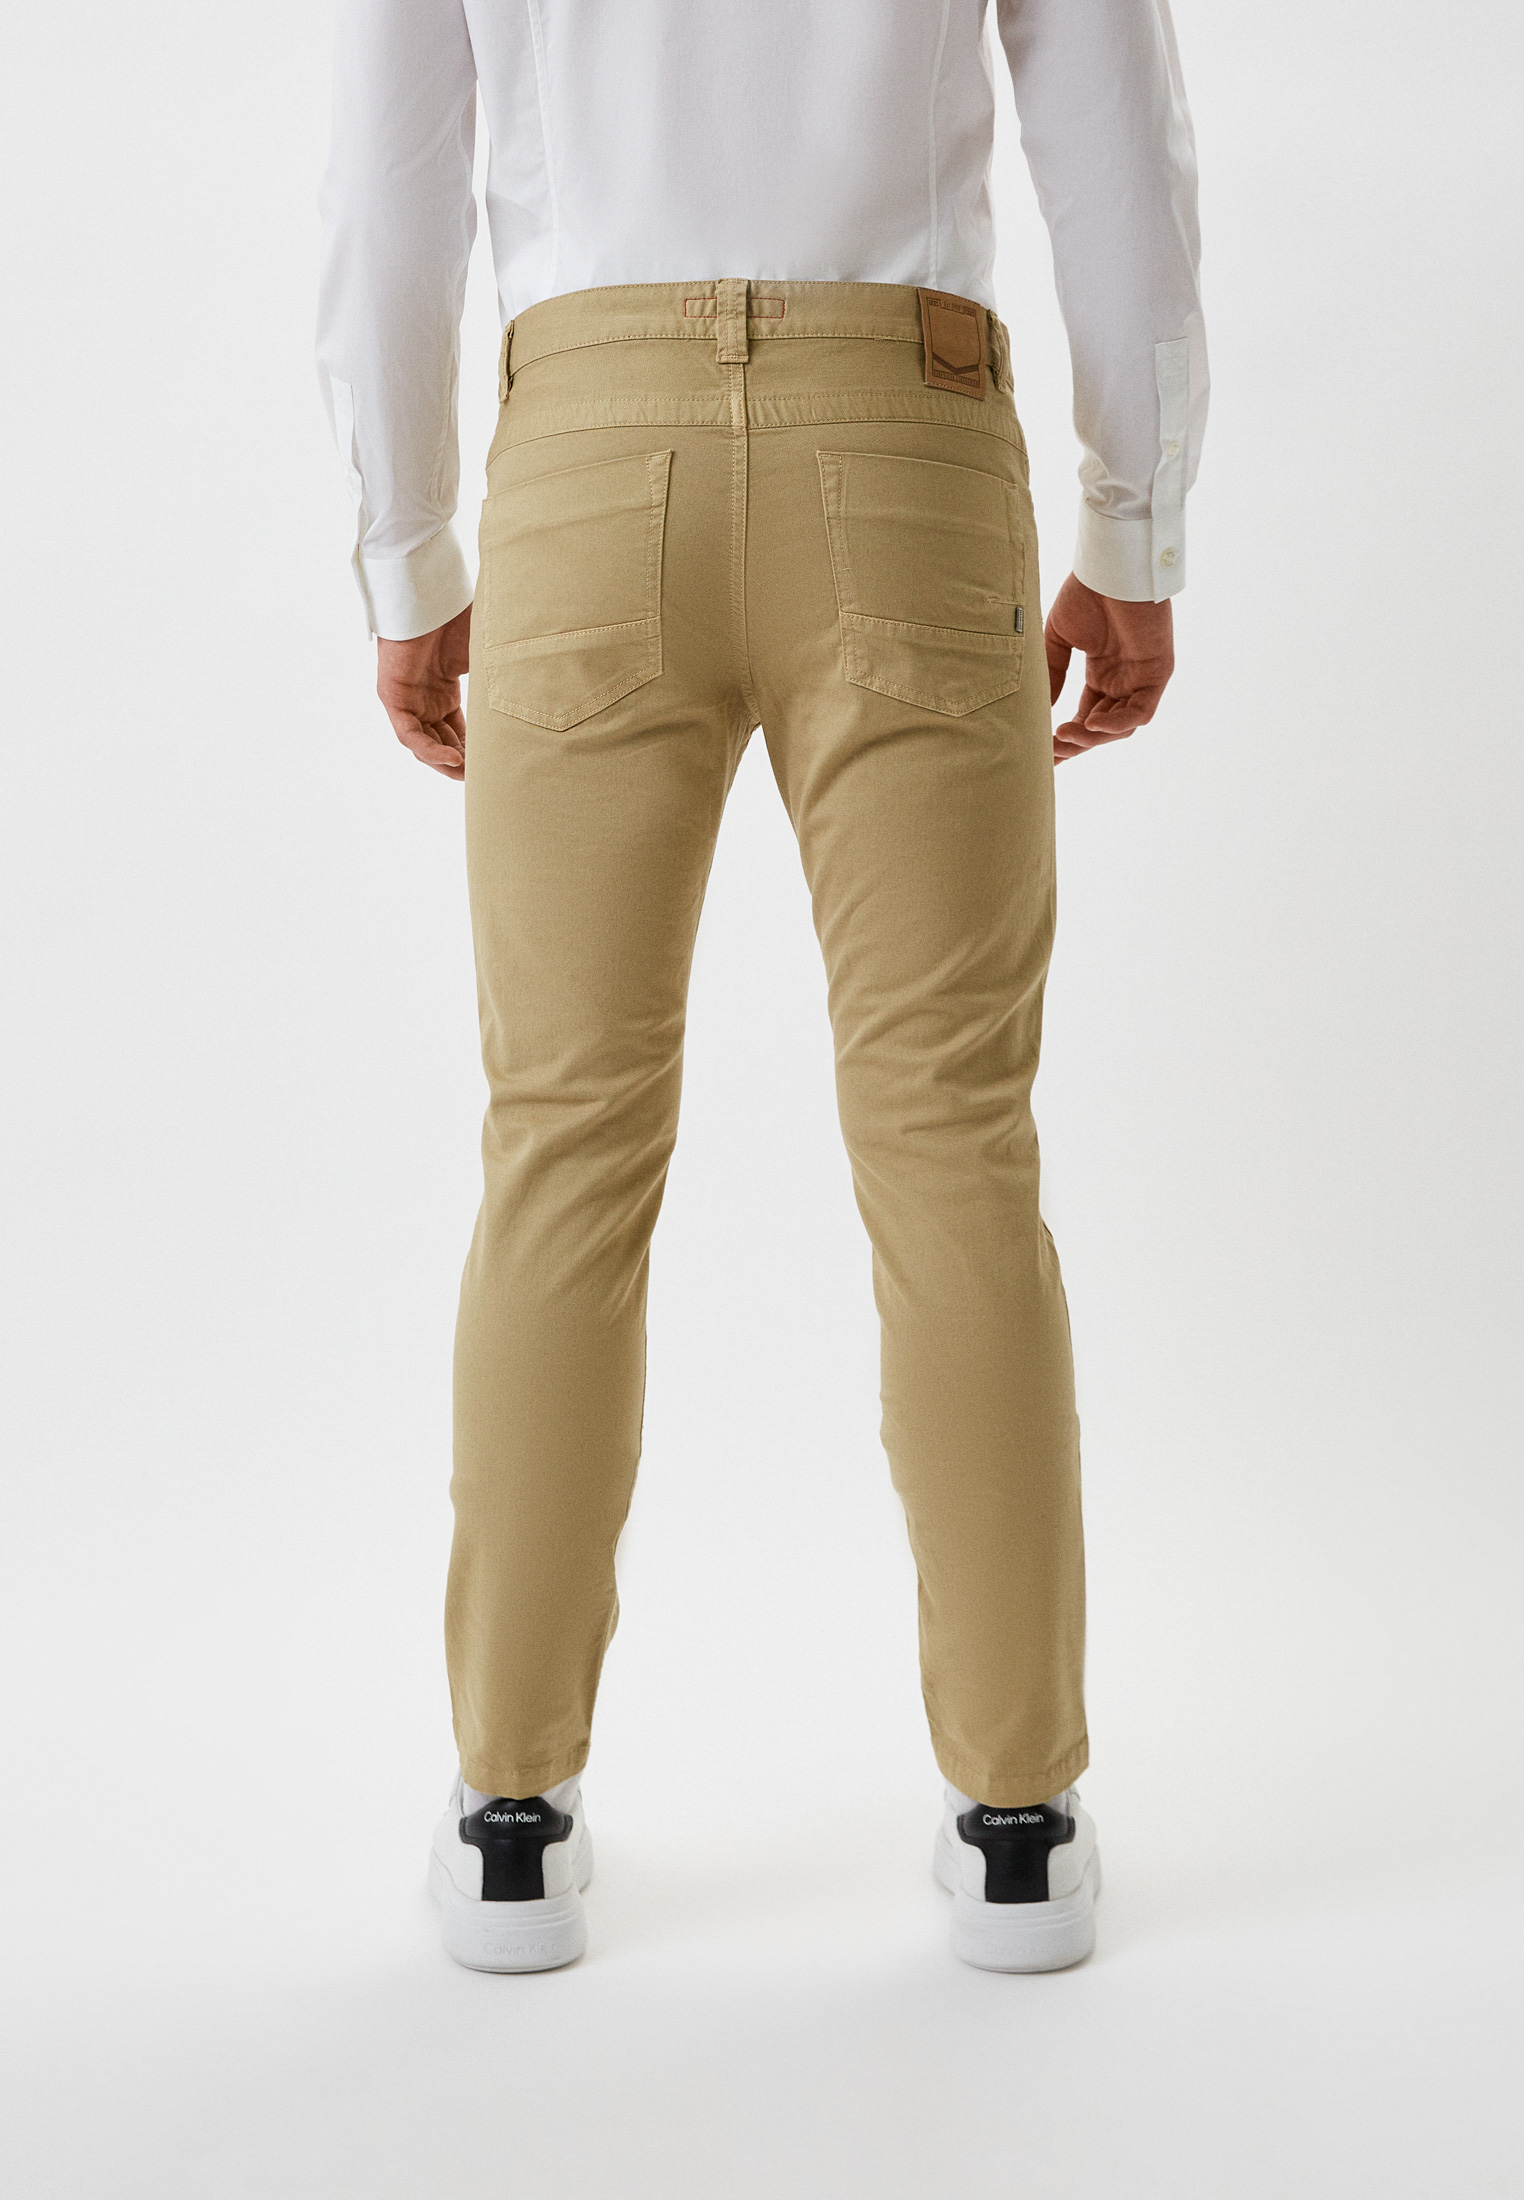 Мужские повседневные брюки Bikkembergs (Биккембергс) C Q 101 00 S 3279: изображение 3